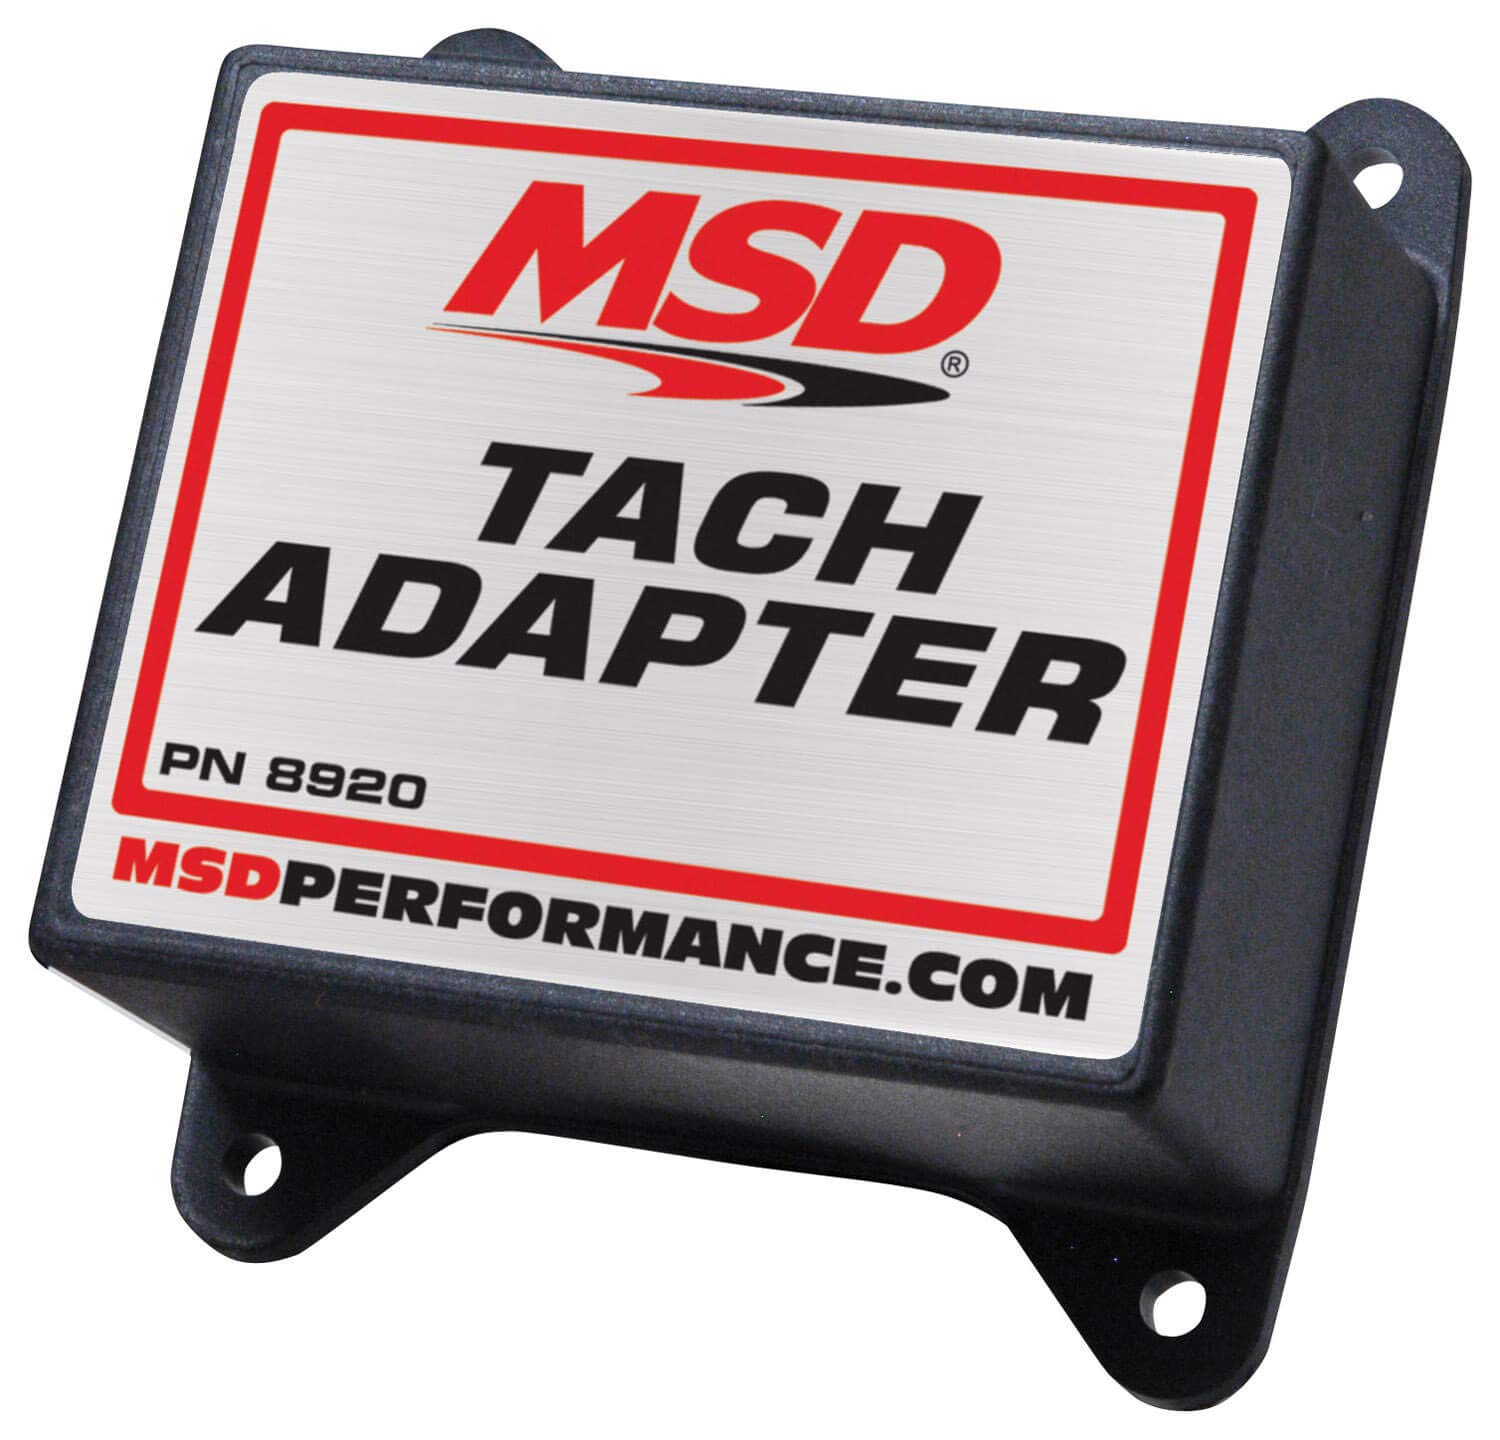 MSD 8920 Tach Adapter Magnetisch Trigger von MSD